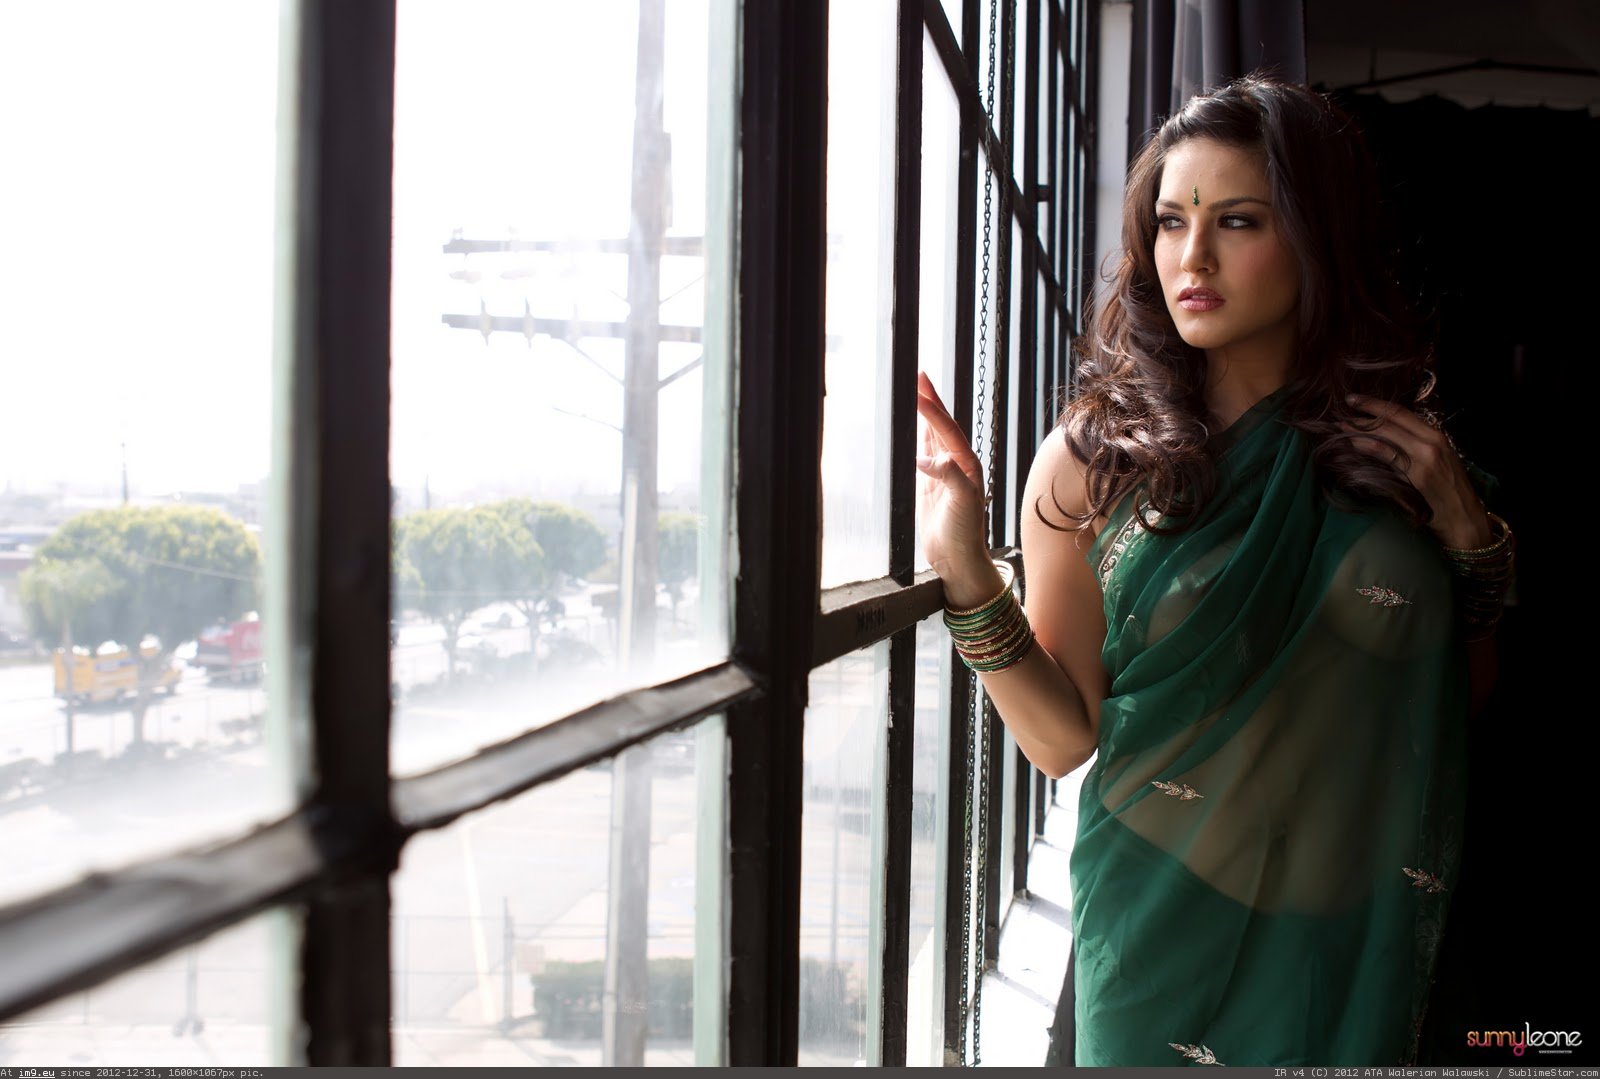 1600px x 1079px - Pic. #Green #Leone #Saree #Sunny, 169722B â€“ Sunny Leone 2